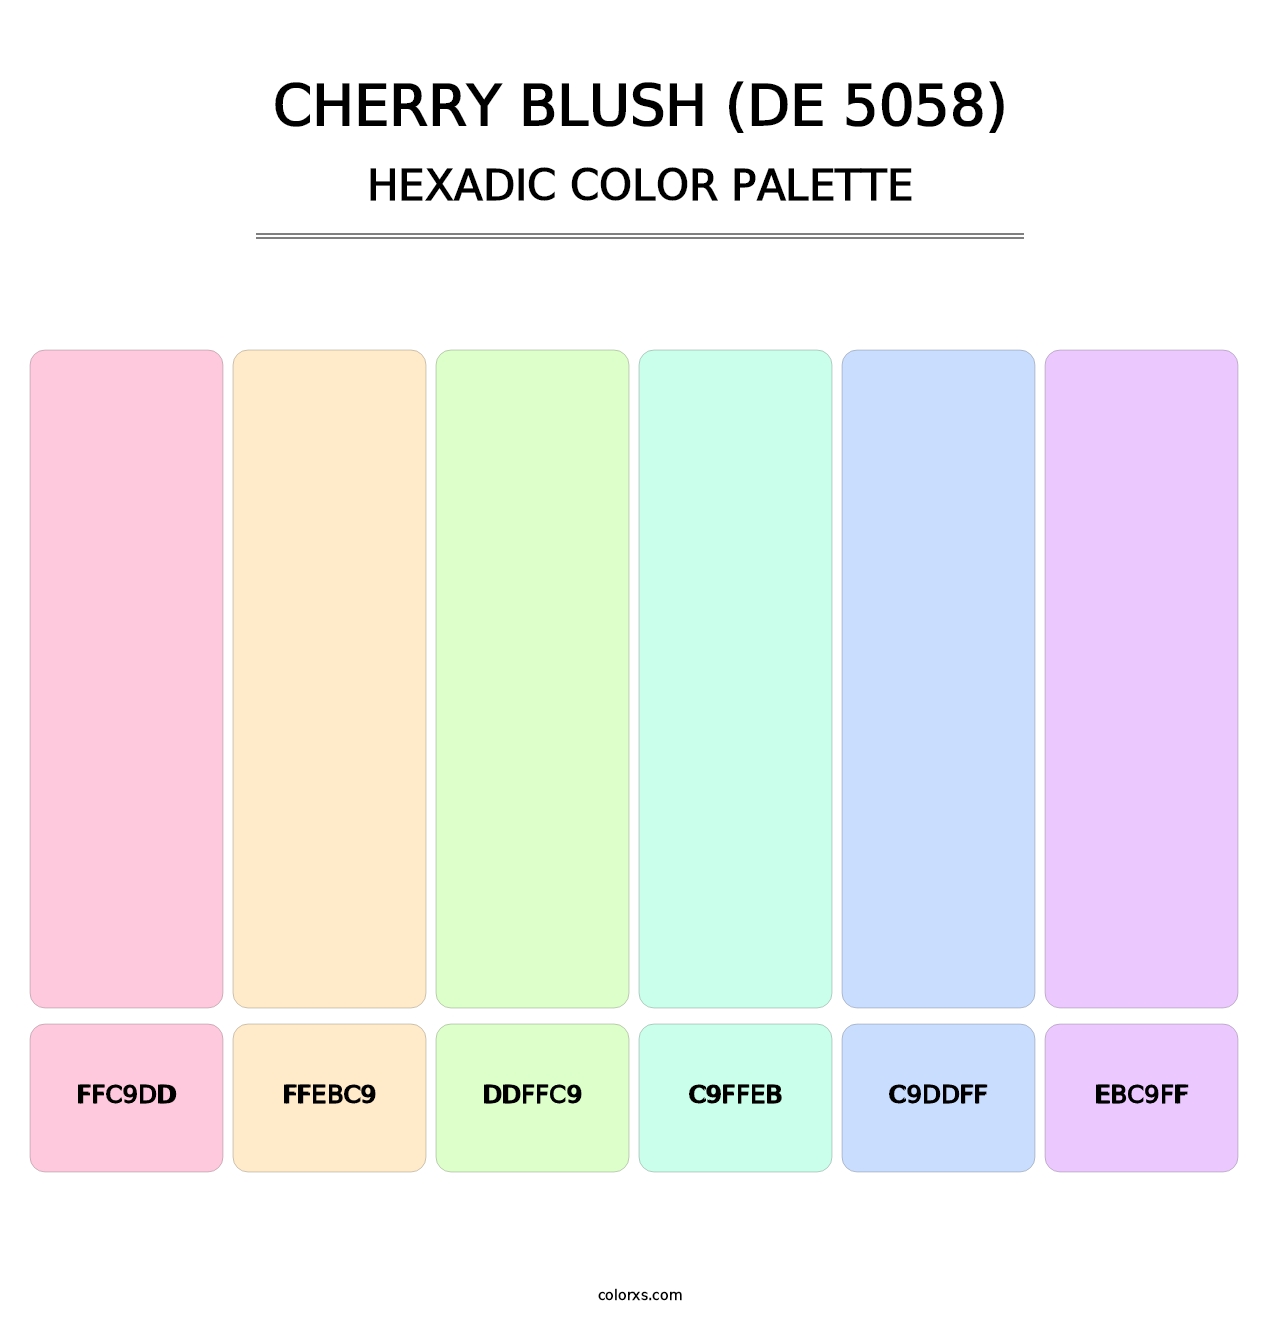 Cherry Blush (DE 5058) - Hexadic Color Palette